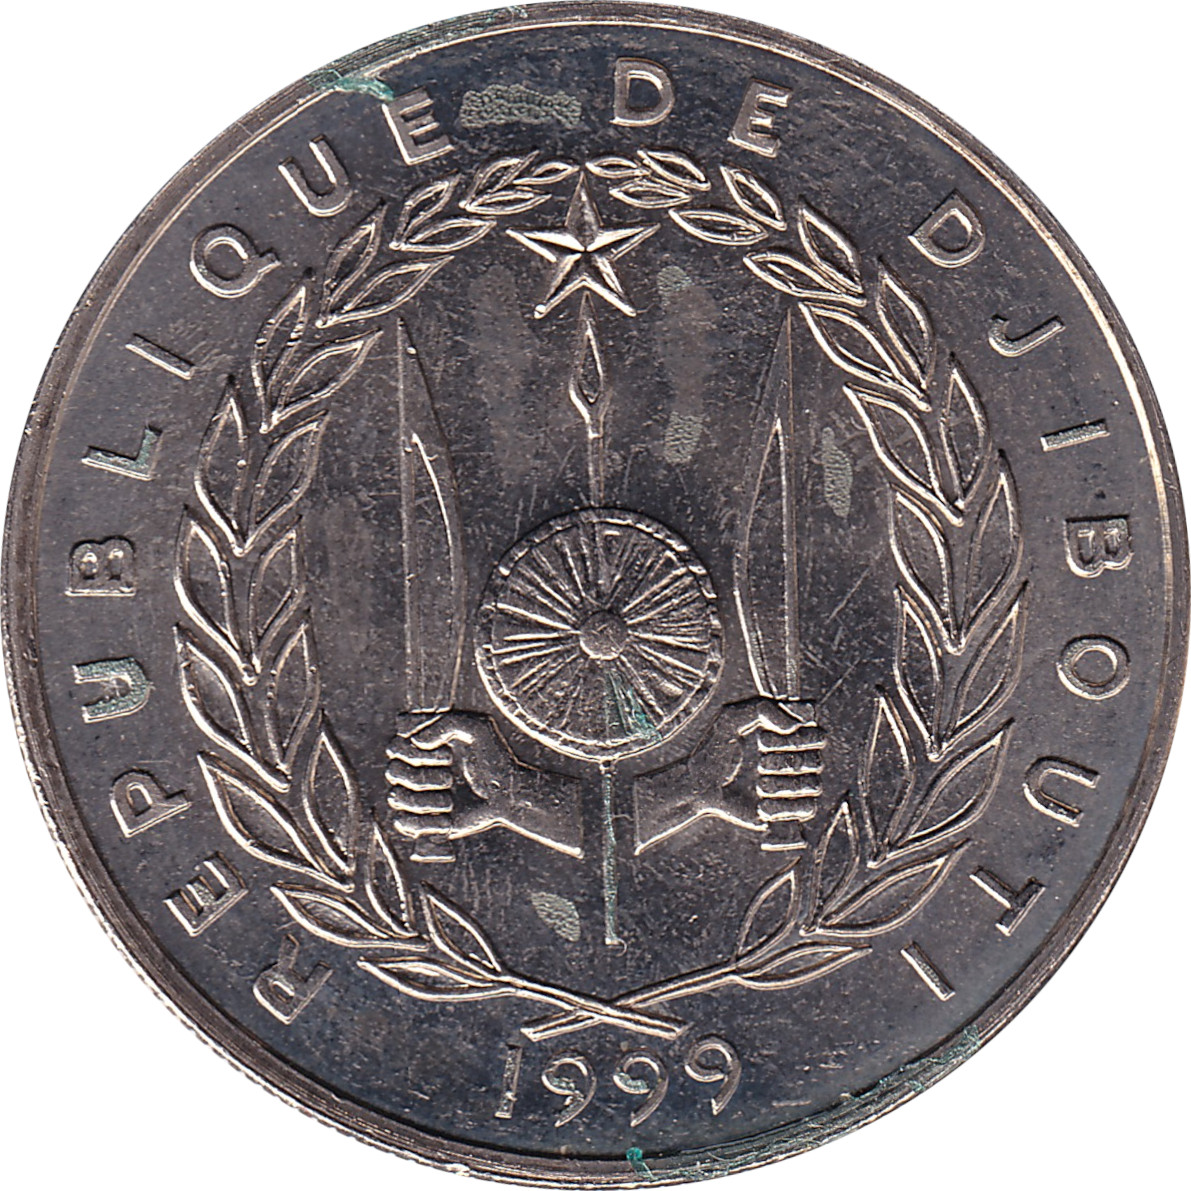 50 francs - Dromadaires